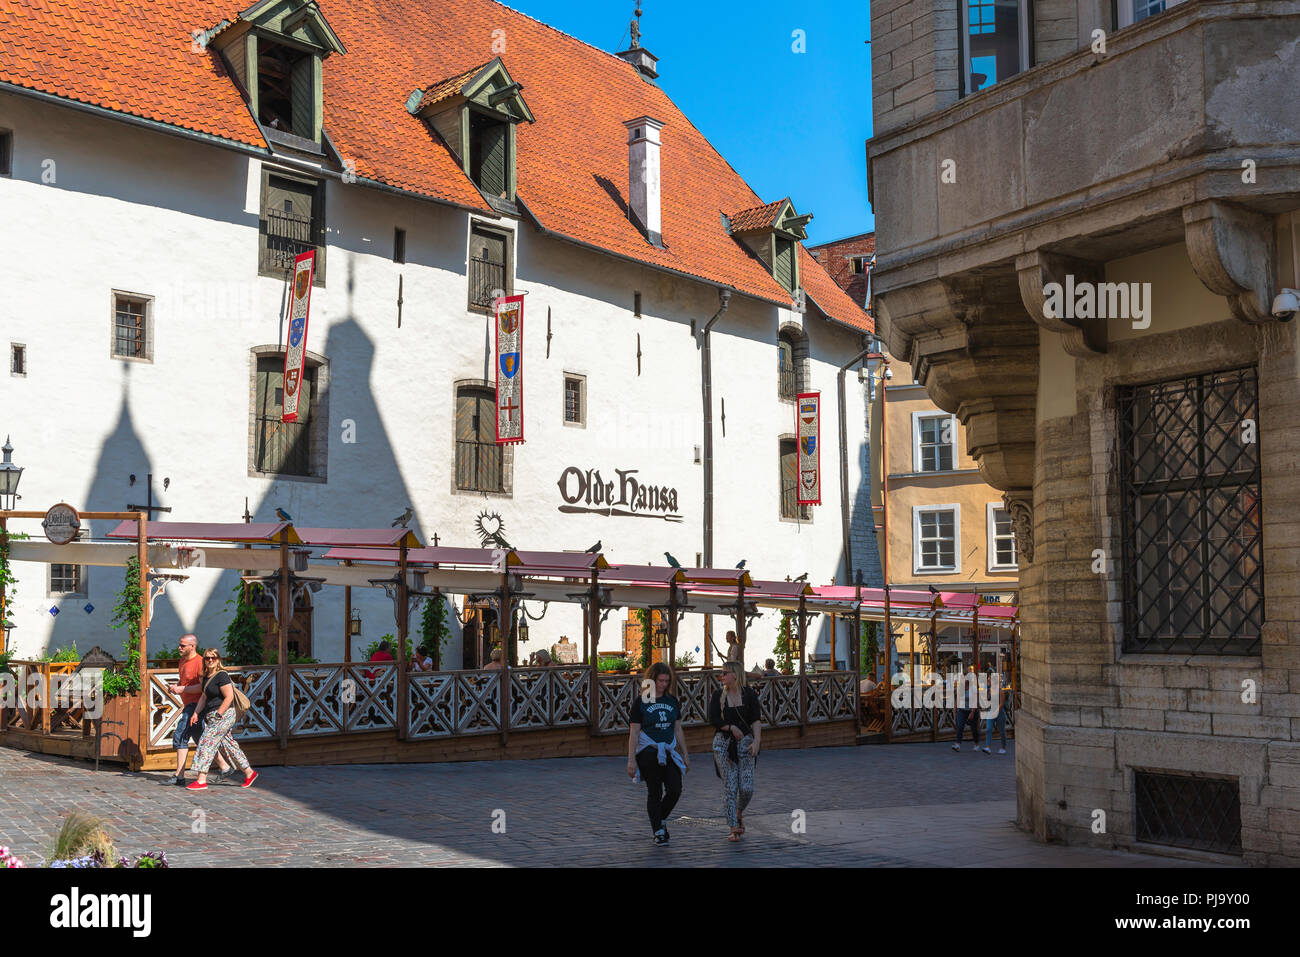 Olde Hansa Restaurant, Blick auf die berühmte Taverne Olde Hansa Restaurant im Zentrum der Altstadt von Tallinn, Estland. Stockfoto